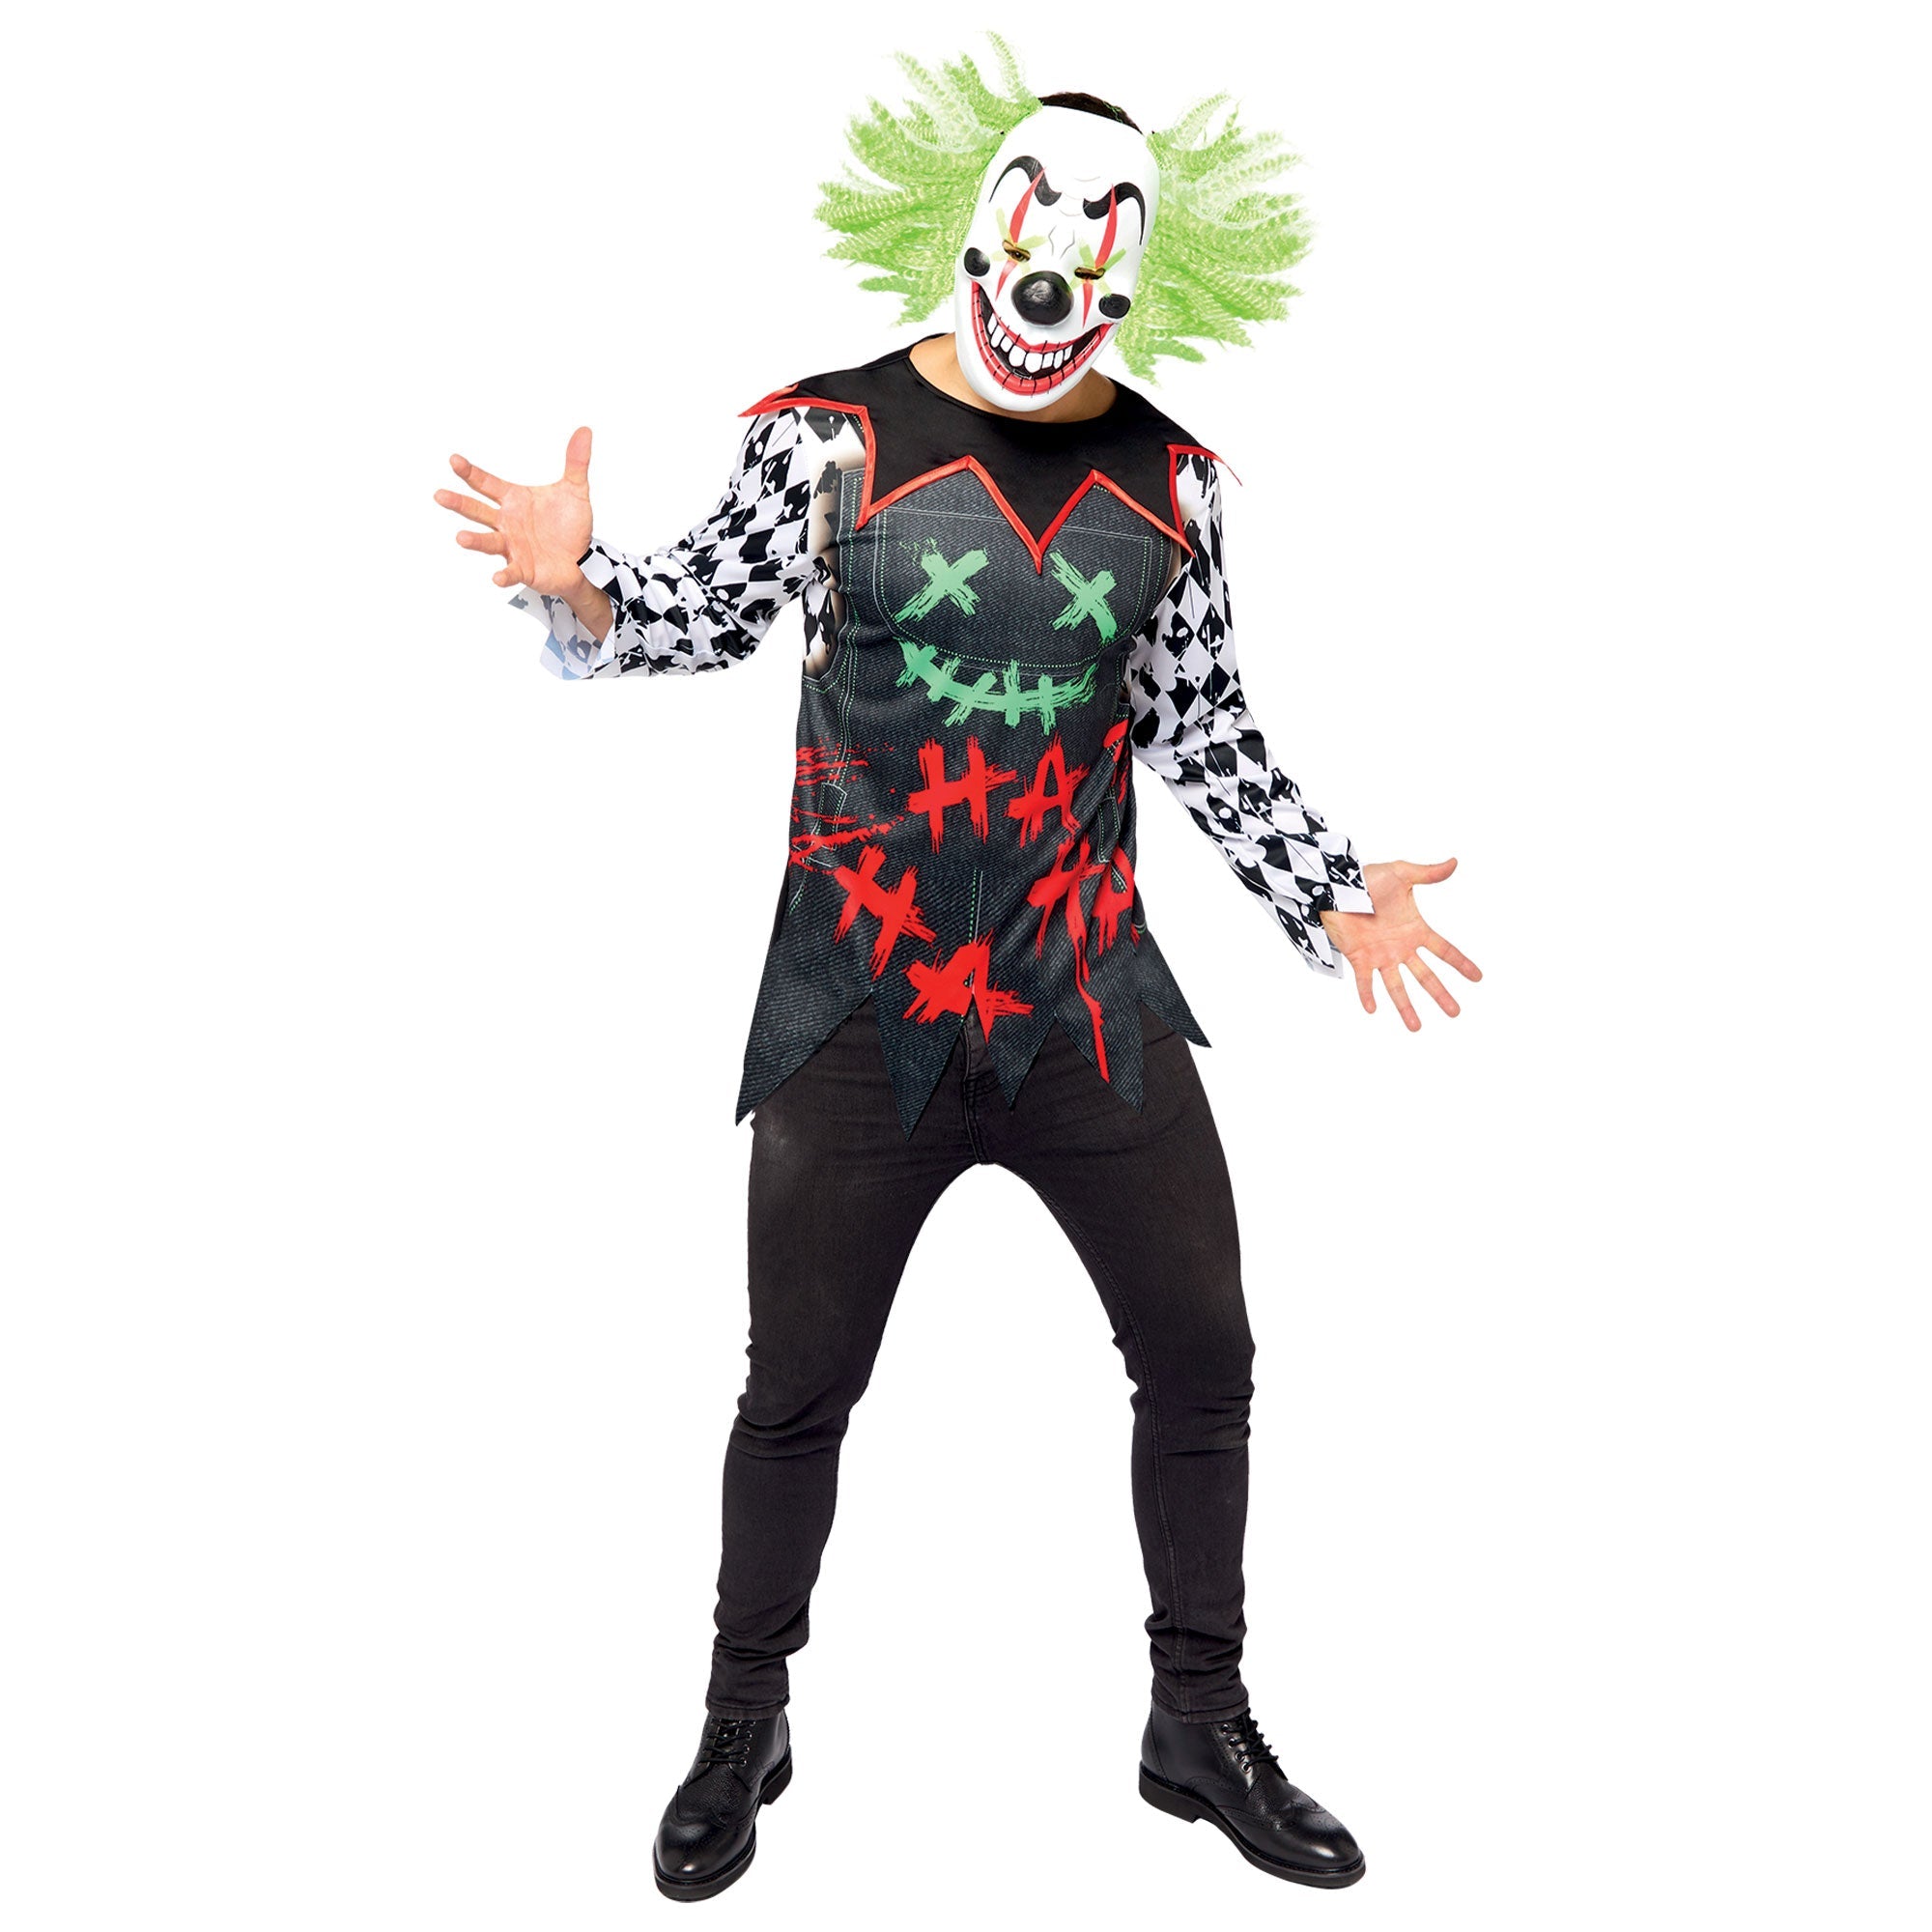 Costume Haha Clown Set Men's Adult Plus Size Top & Mask